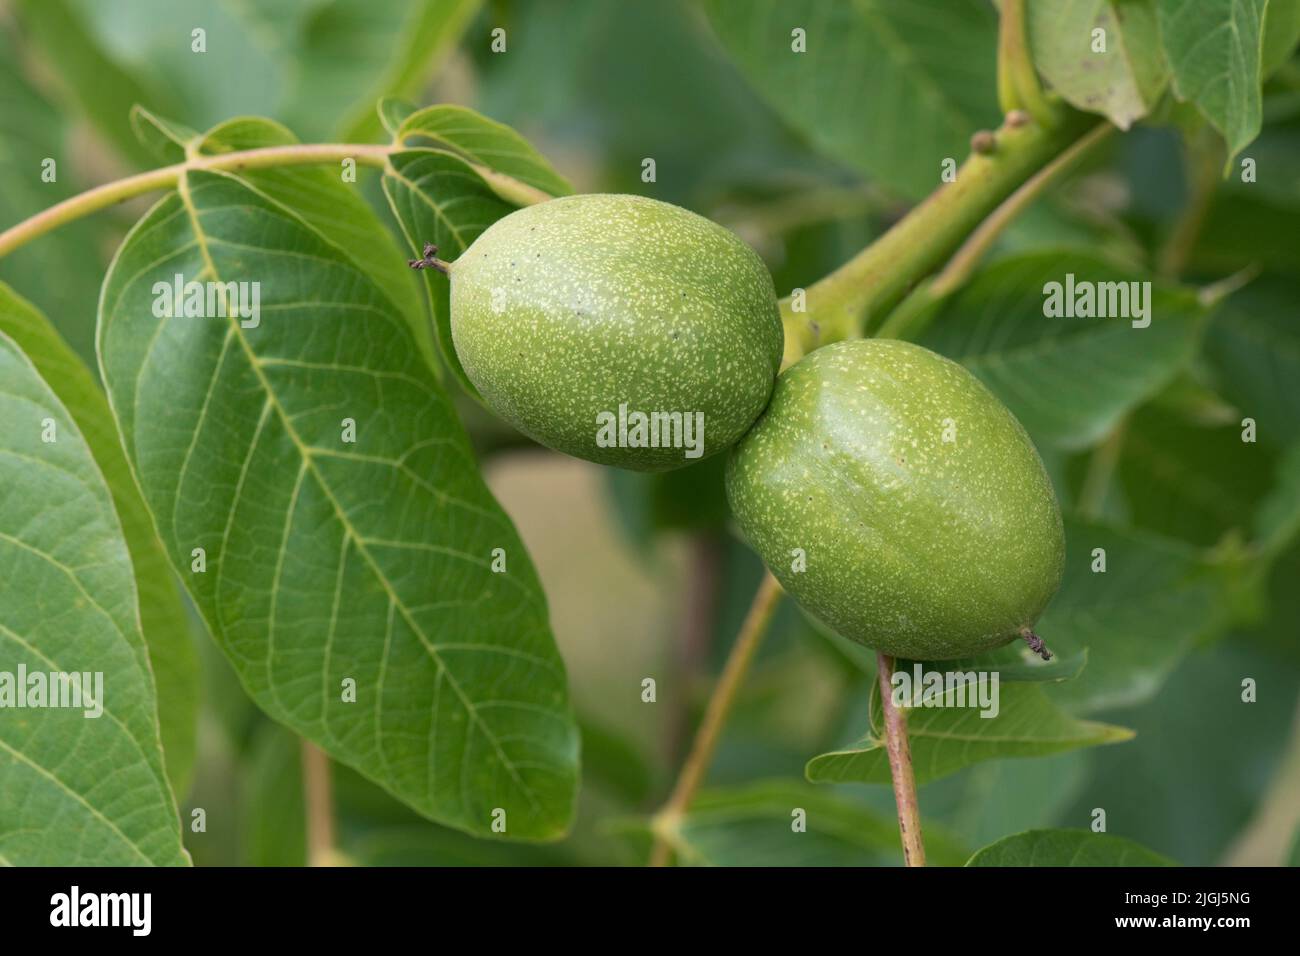 Nuez verde madura (Juglans regia) drupa de temporada media que contiene una nuez inmadura en el árbol, Berkshire, julio Foto de stock